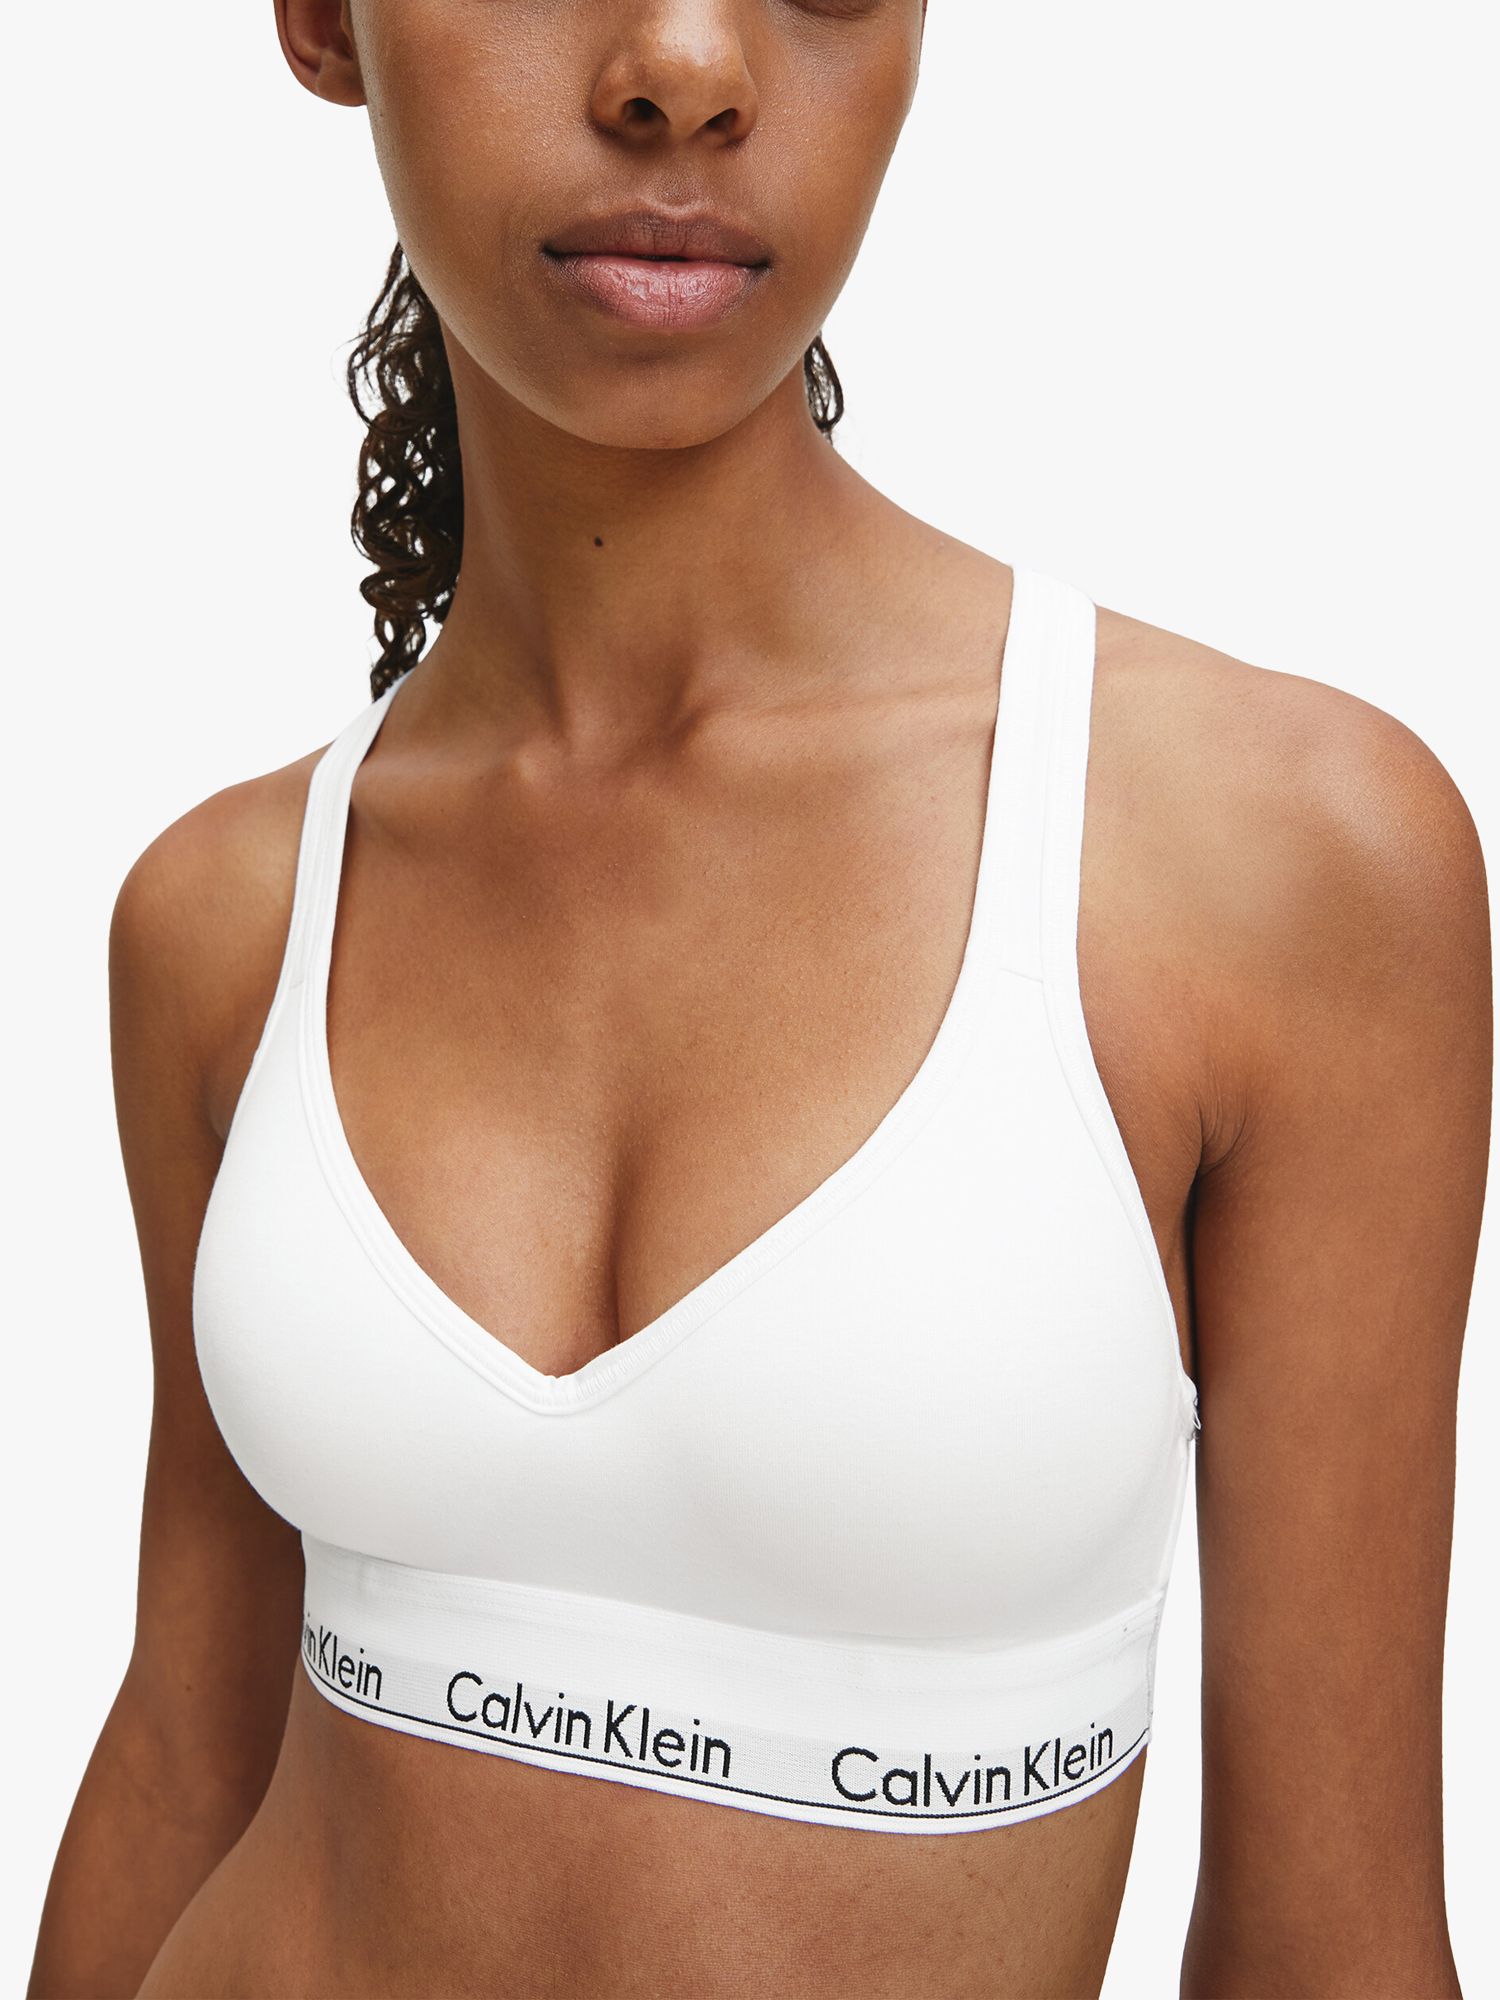 calvin klein Calvin Klein Modern Cotton Pride Edit Bralette white